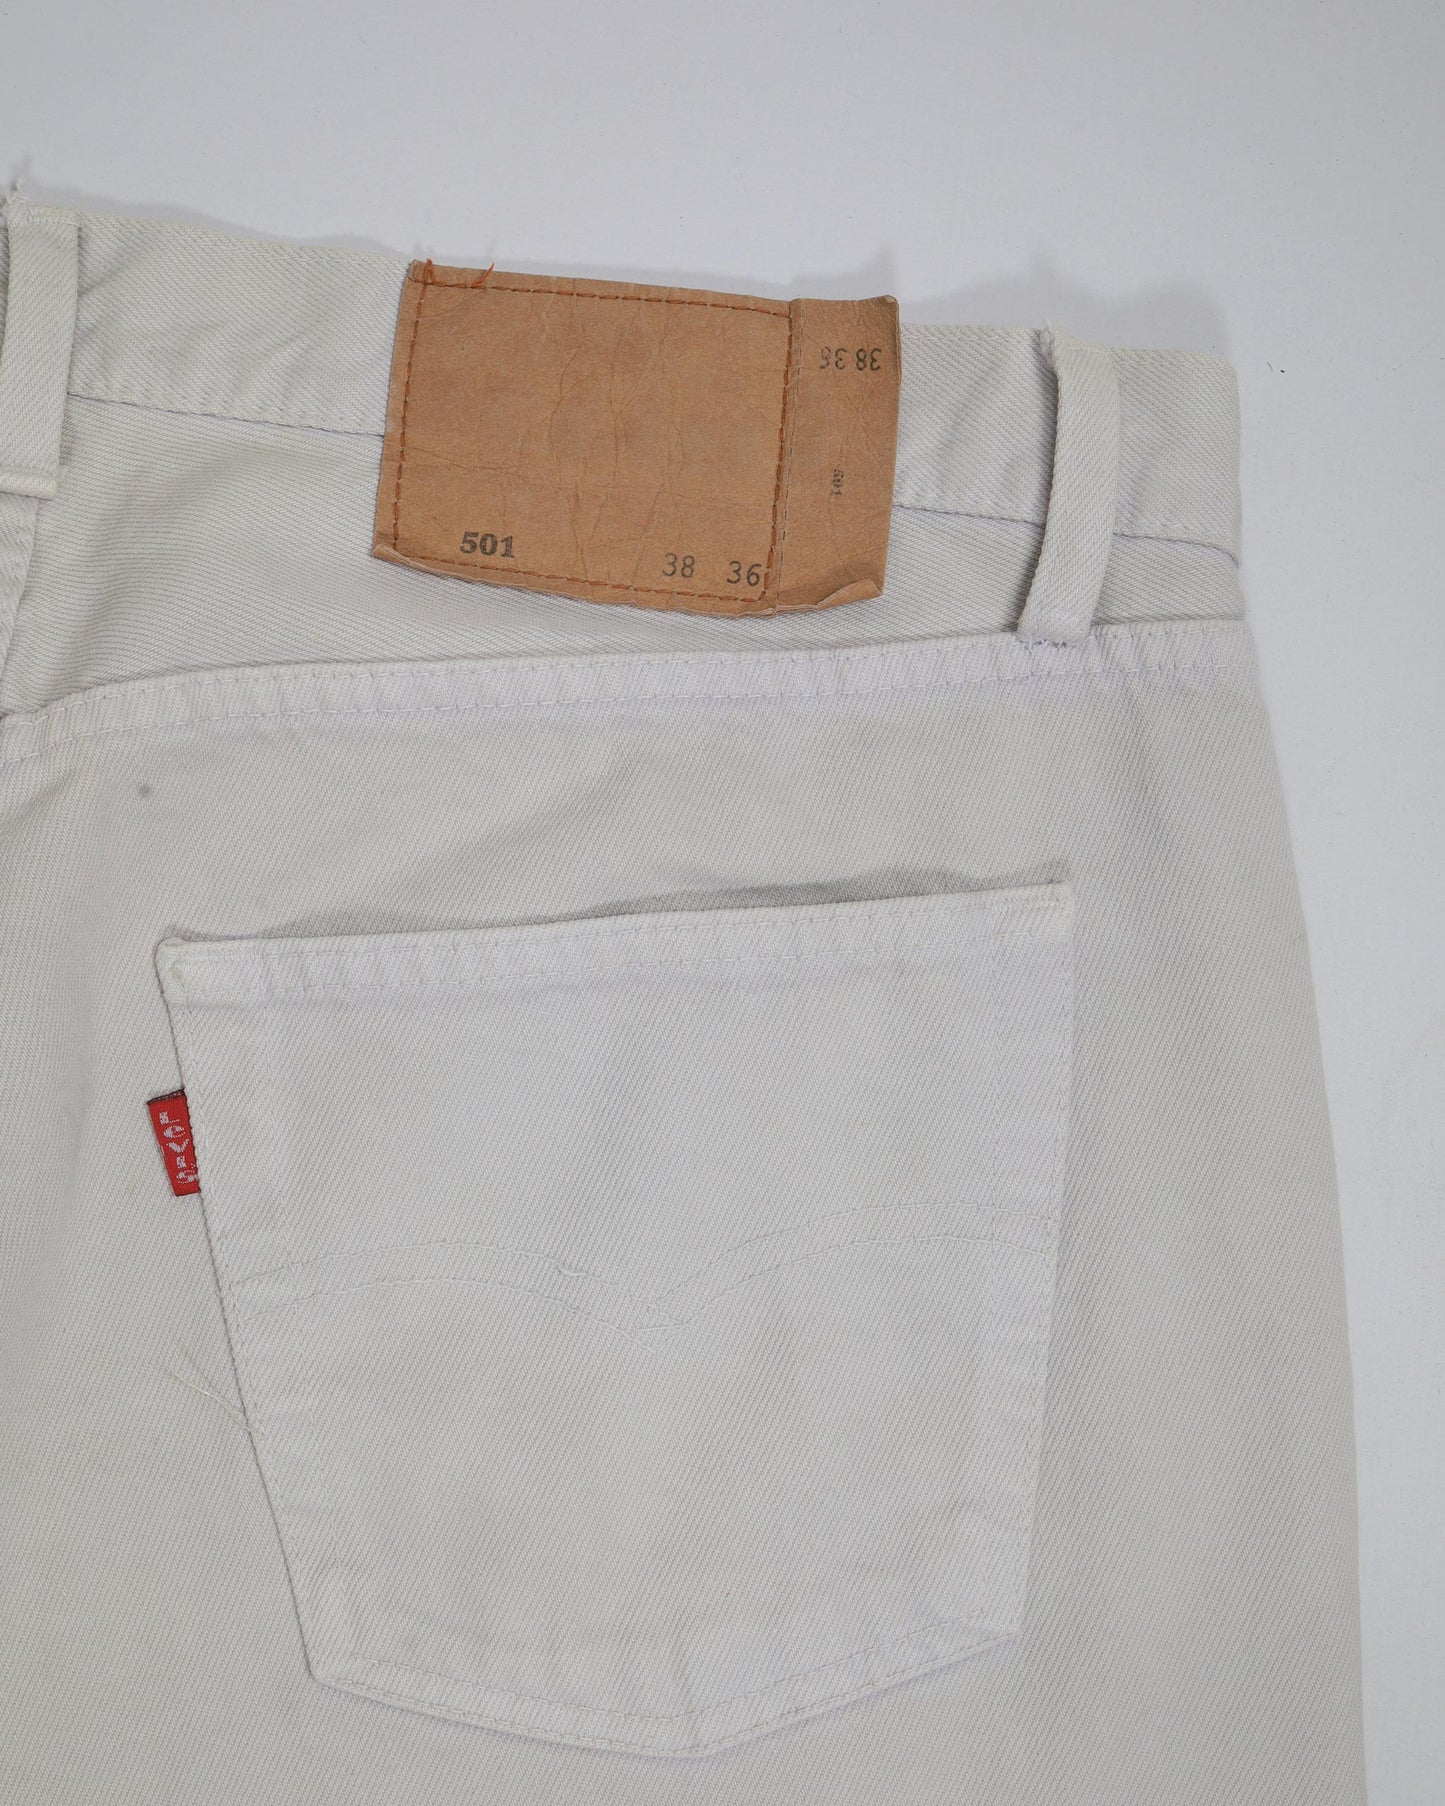 Vintage Levi’s 501 Straight Fit Denim Jeans